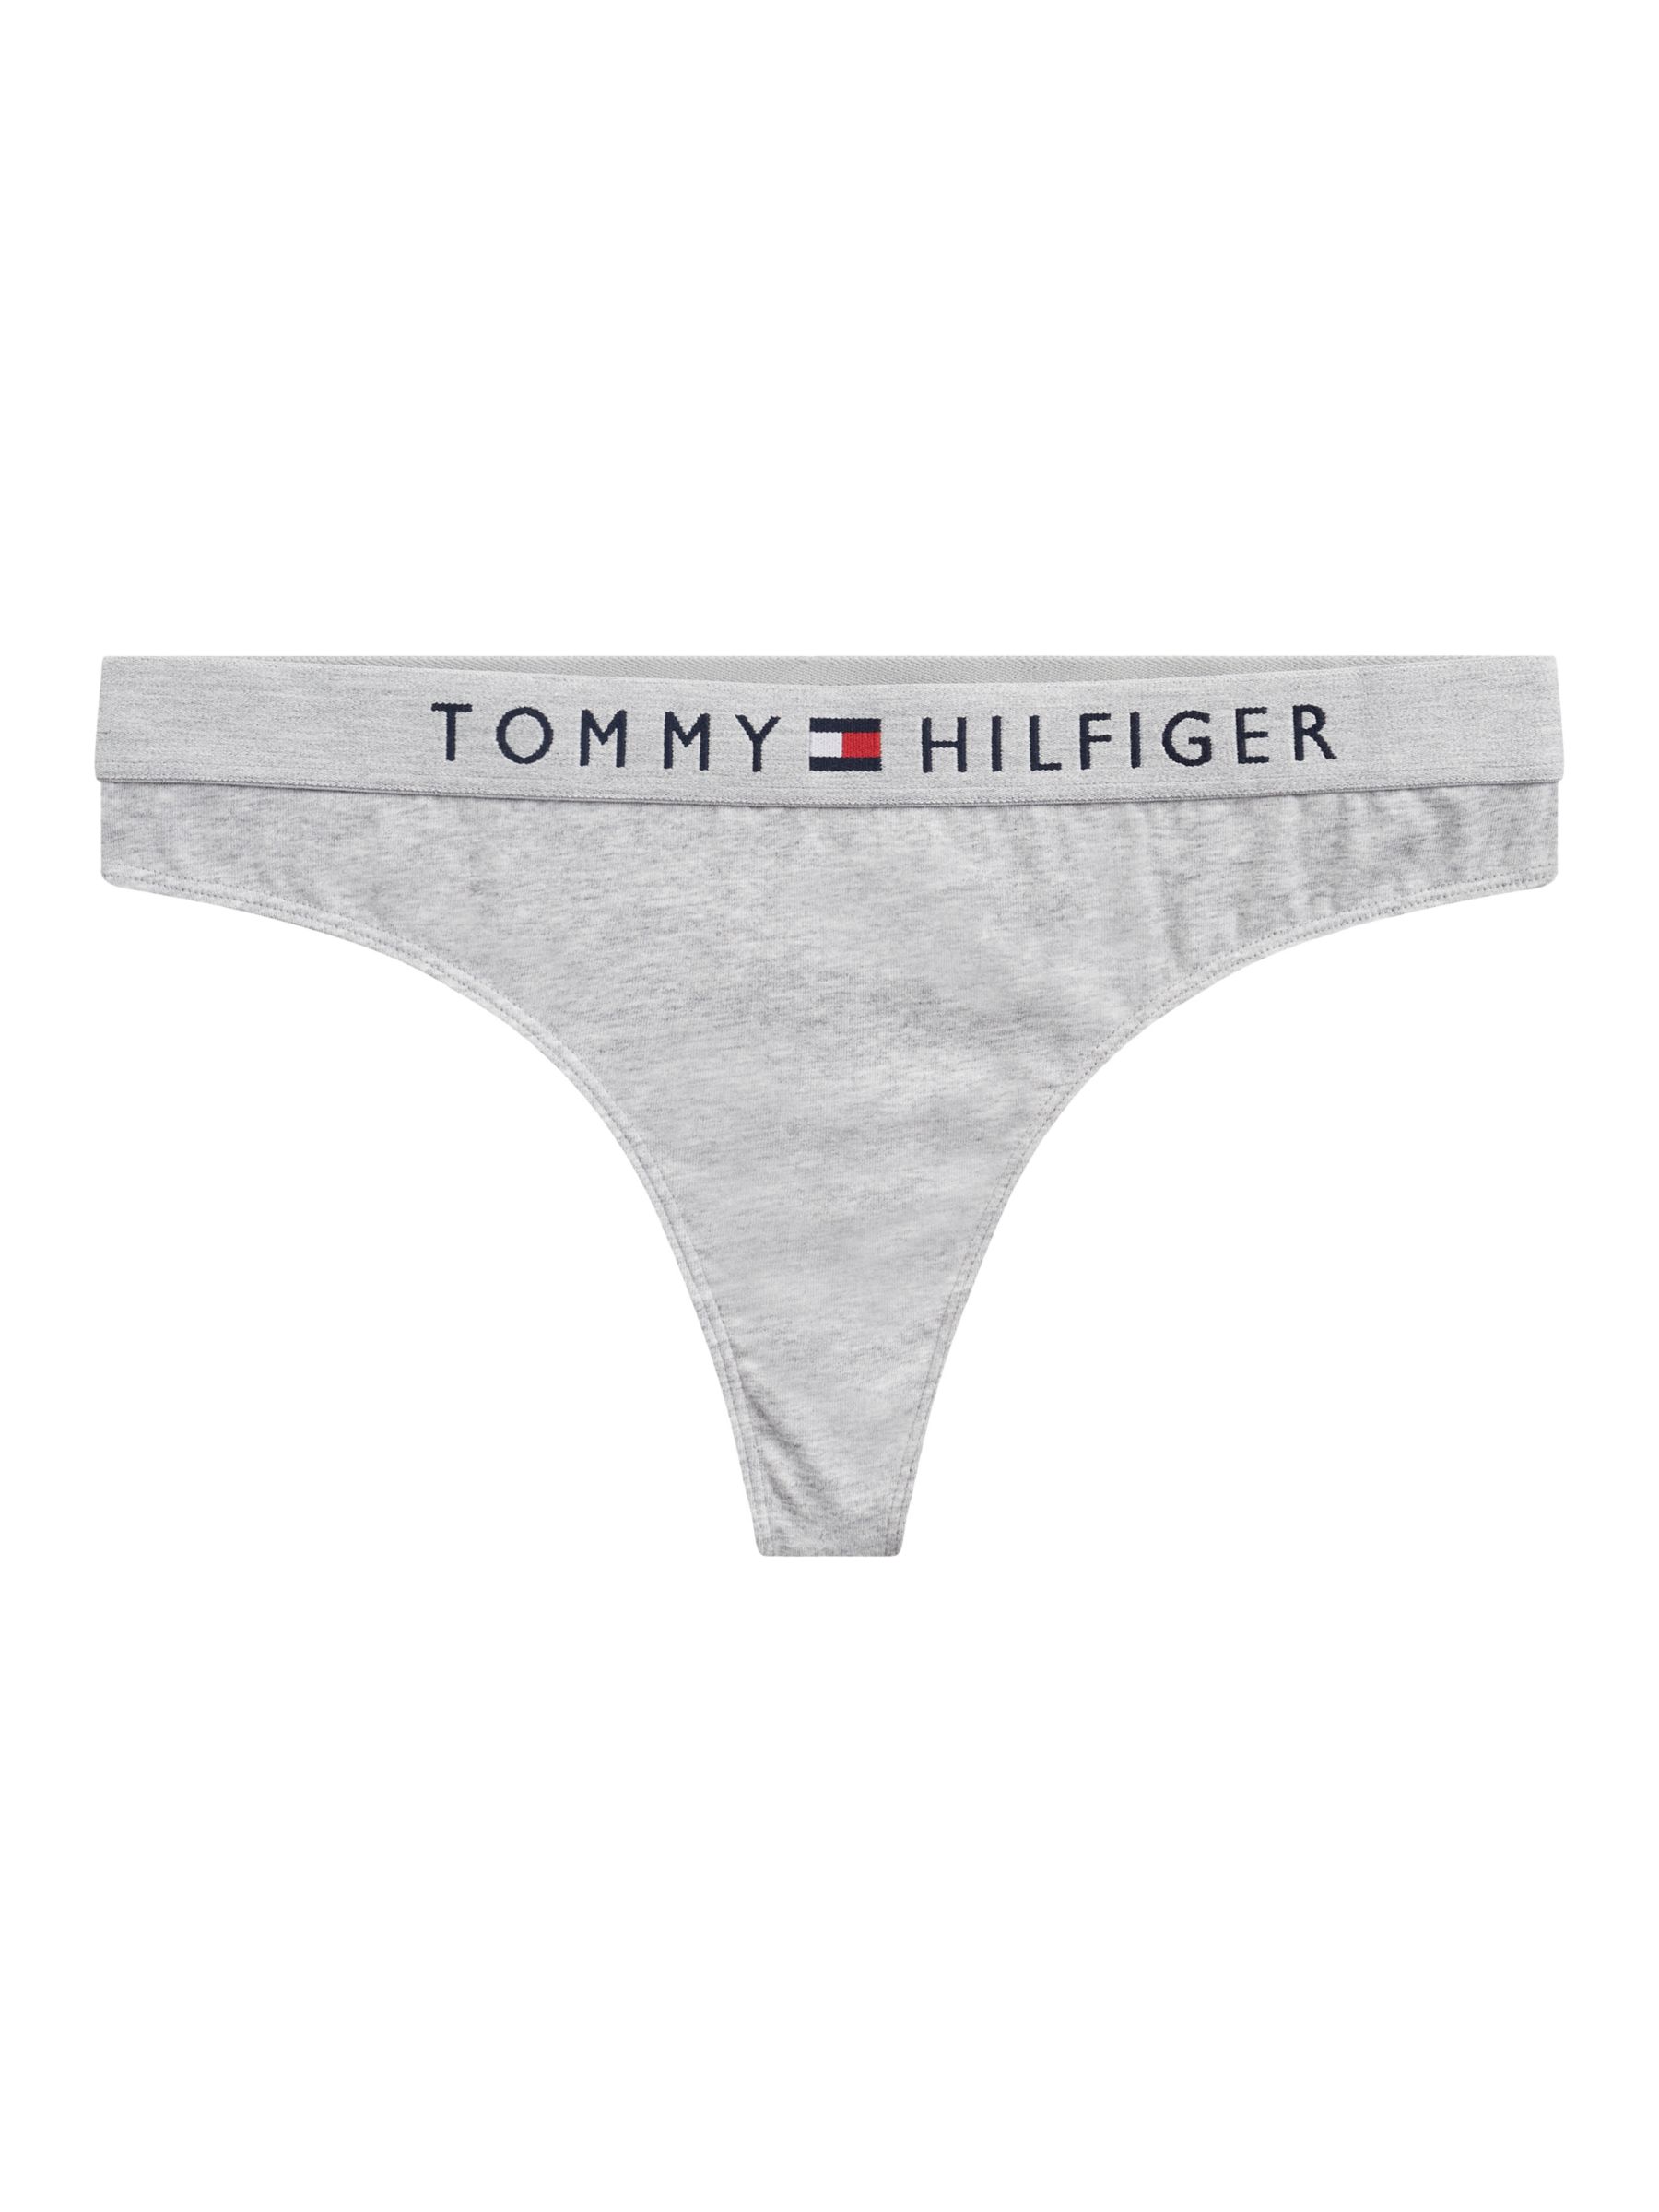 Women - Tommy Hilfiger Underwear Clothing - JD Sports NZ